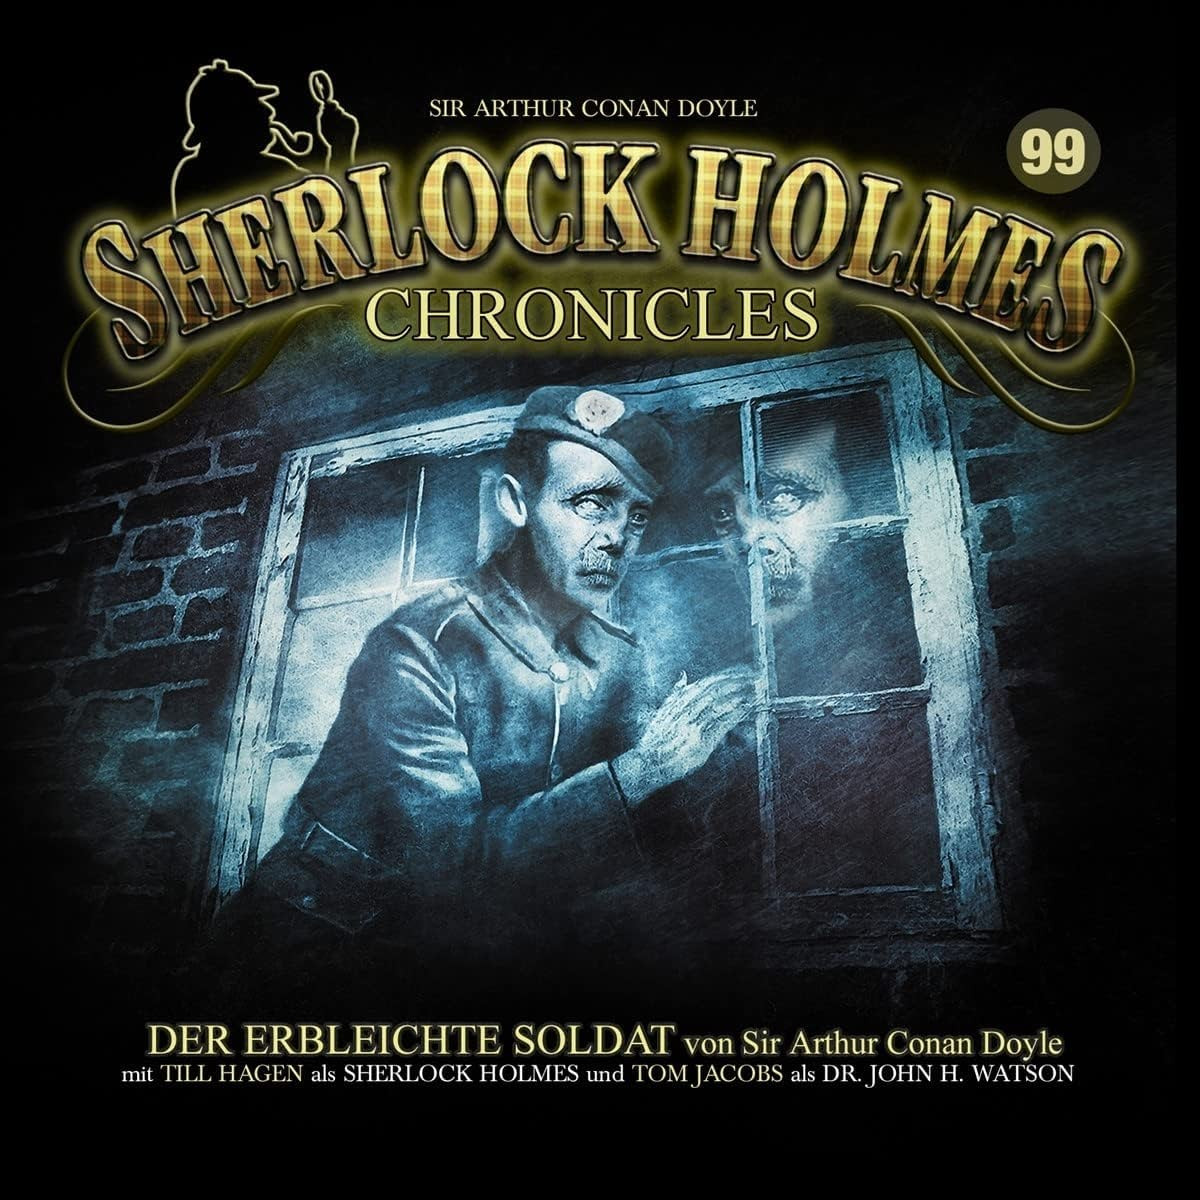 Sherlock Holmes Chronicles 99 Der erbleichte Soldat